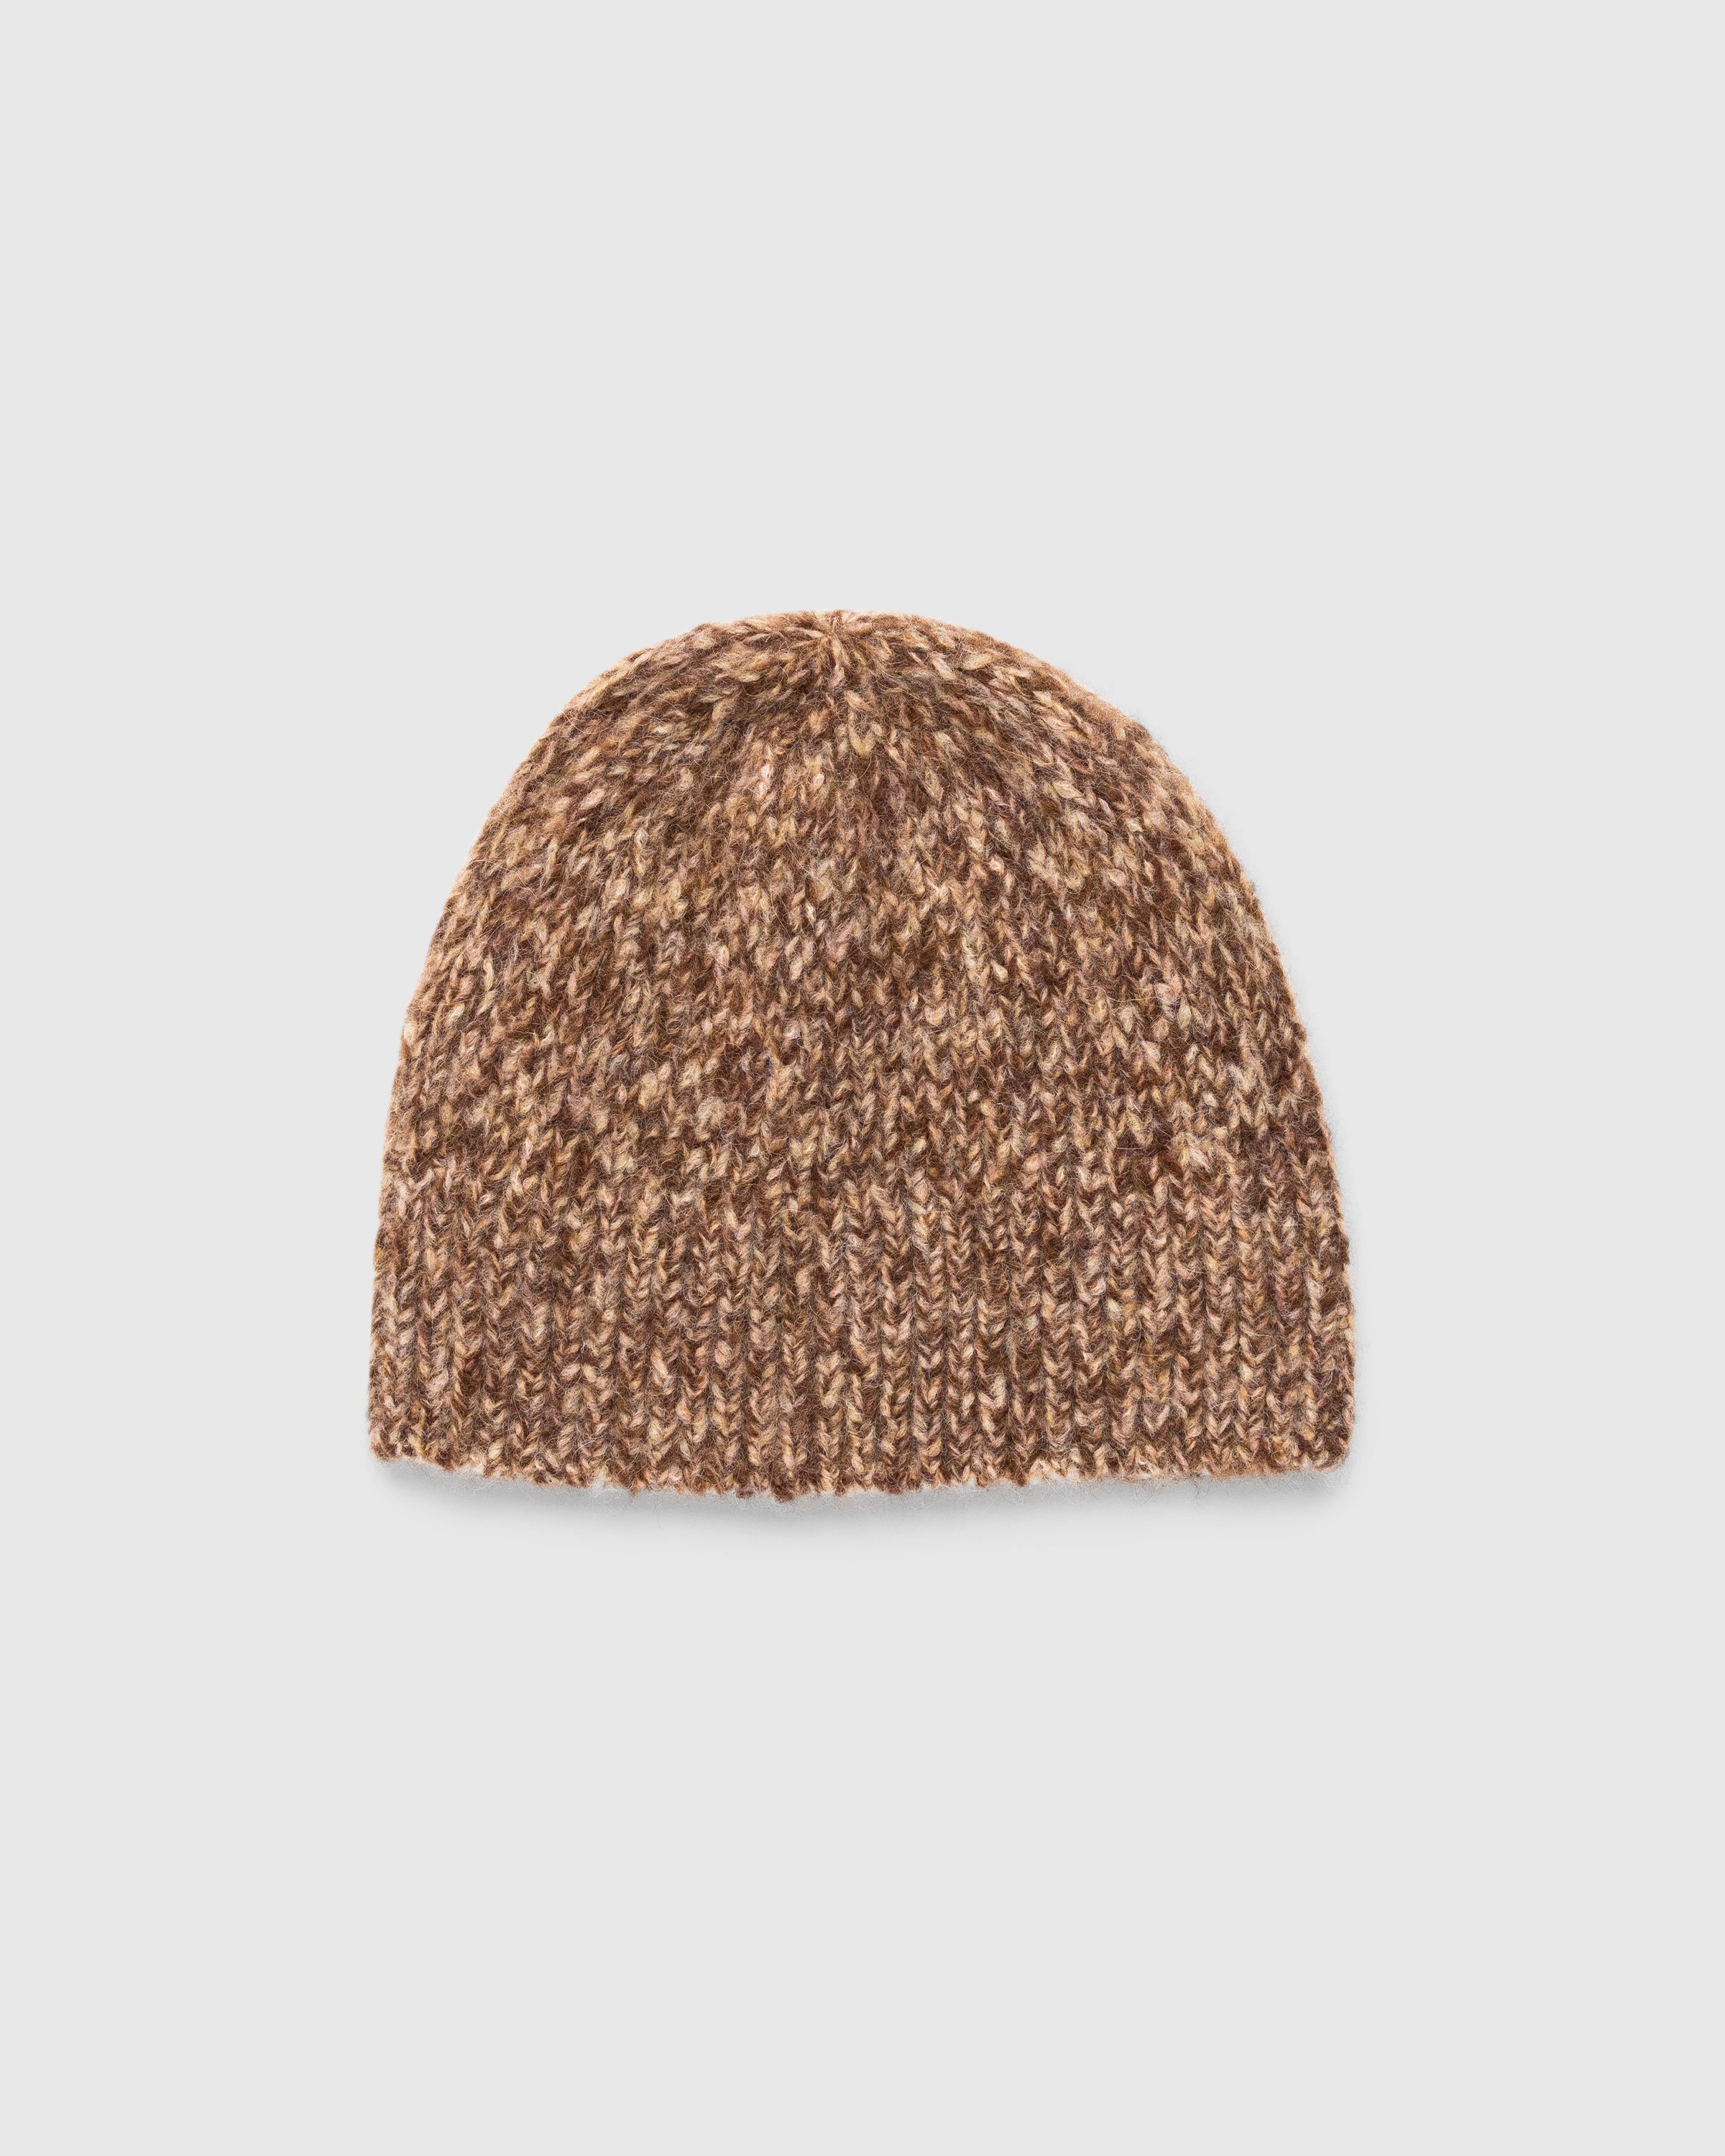 Dries van Noten - Moss Knit Hat Brown - Accessories - Brown - Image 1